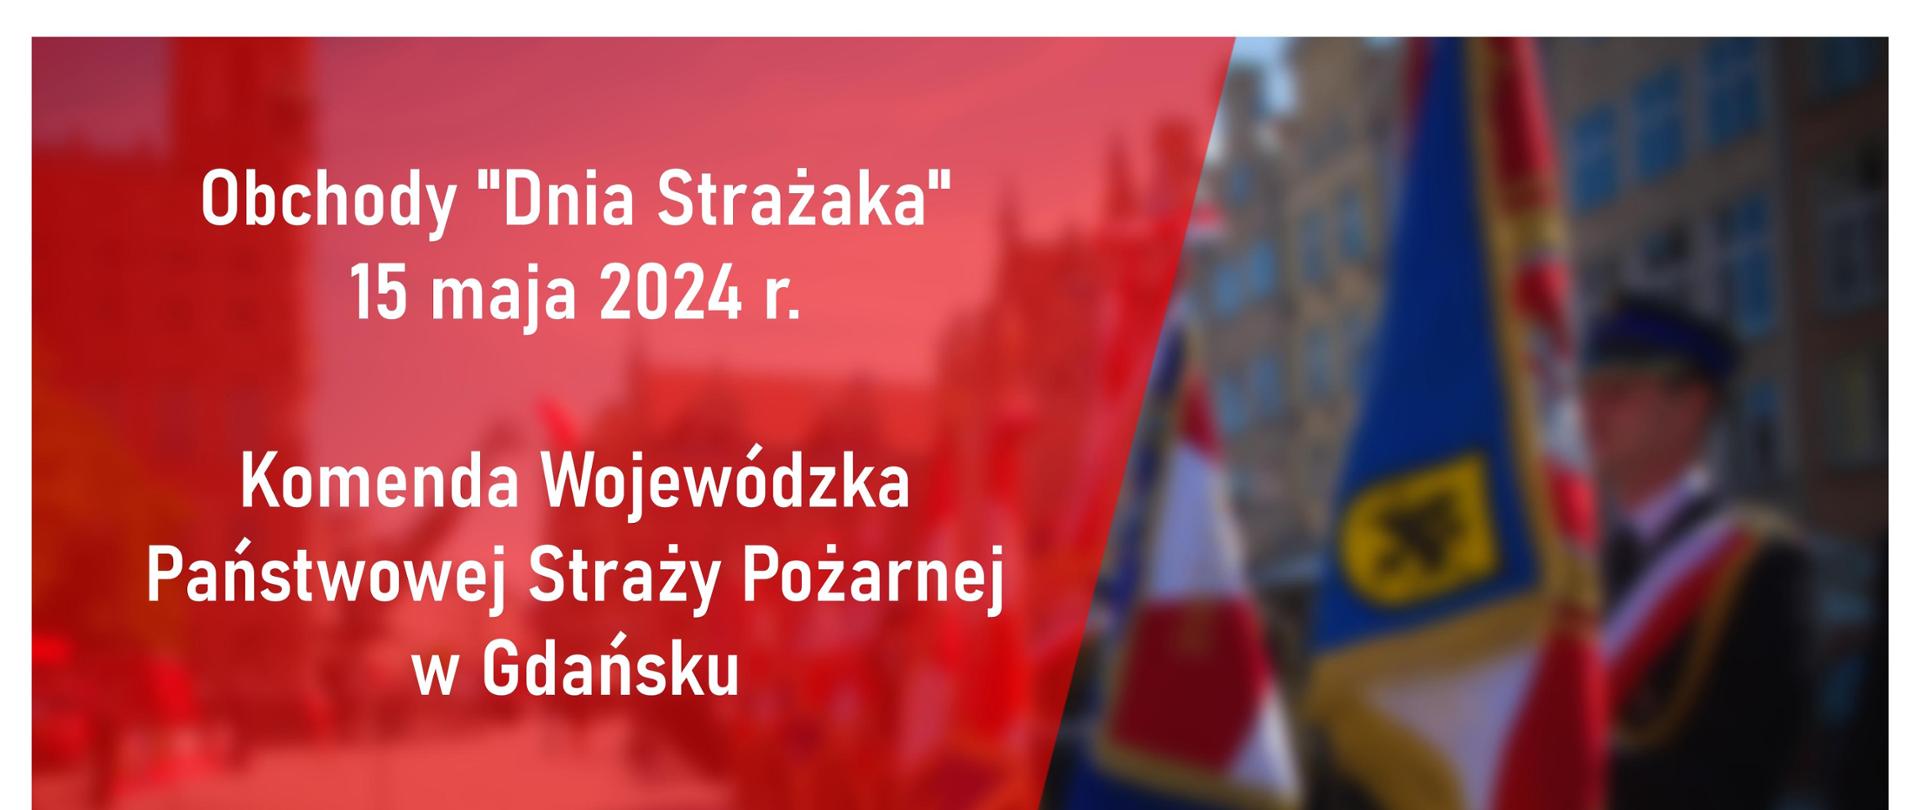 Obchody Dnia Strażaka piętnasty maja dwa tysiące dwadzieścia cztery Komenda Wojewódzka Państwowej Straży Pożarnej w Gdańsku na dole logo Państwowej Straży Pożarnej oraz 20 lat Polski w Unii Europejskiej.